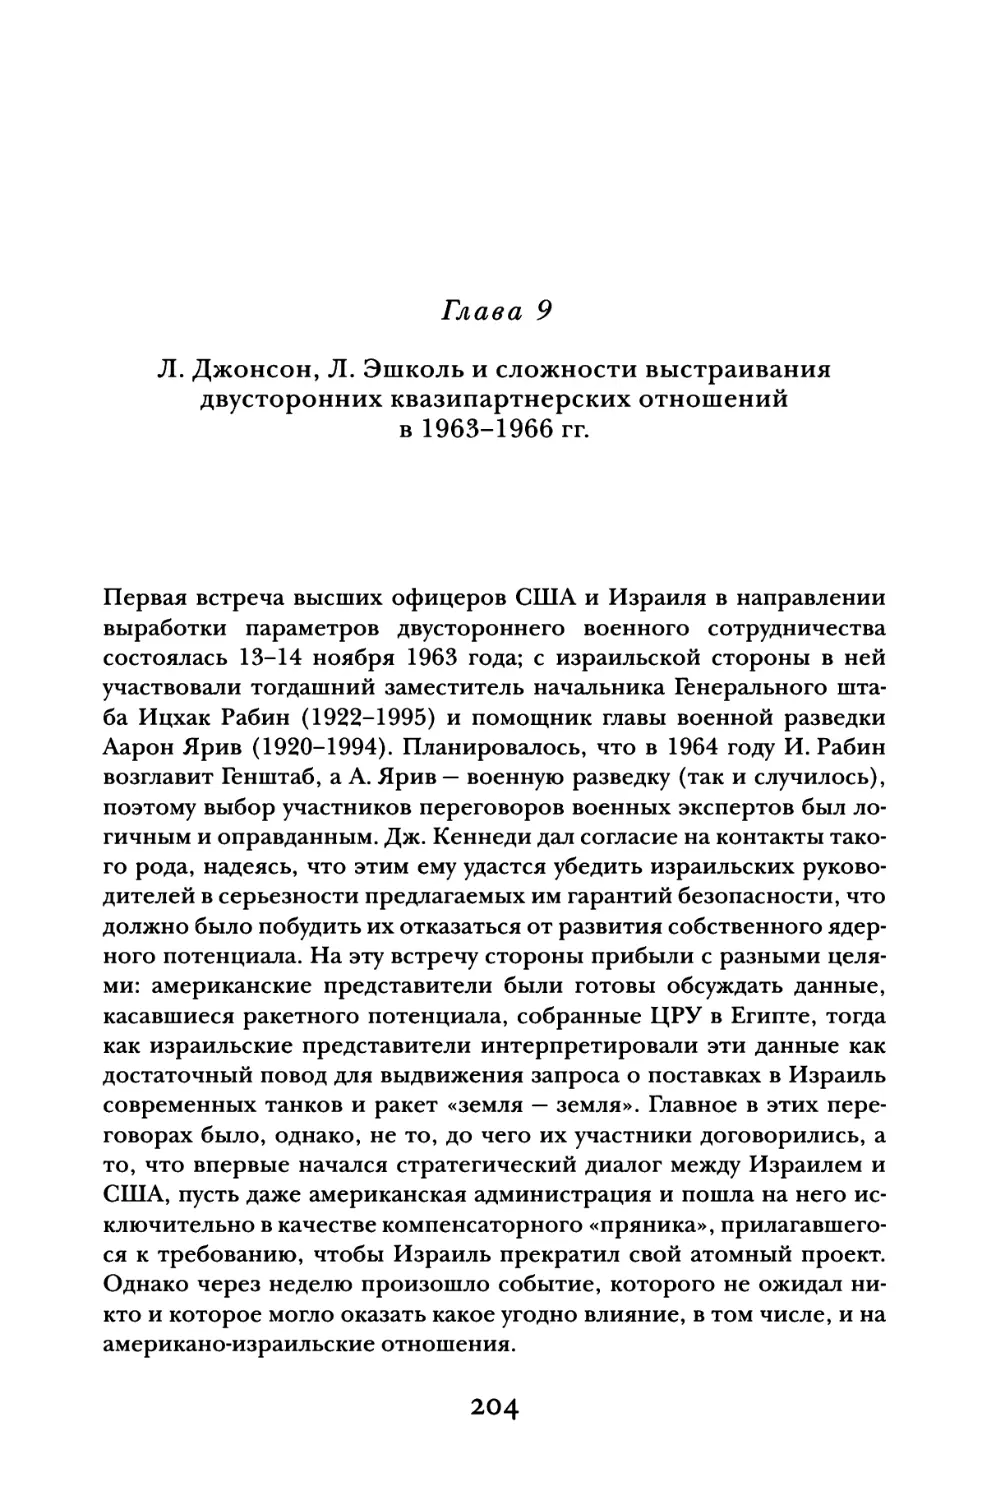 Глава 9. Л. Джонсон, Л. Эшколь и сложности выстраивания двусторонних квазипартнерских отношений в 1963-1966 гг.